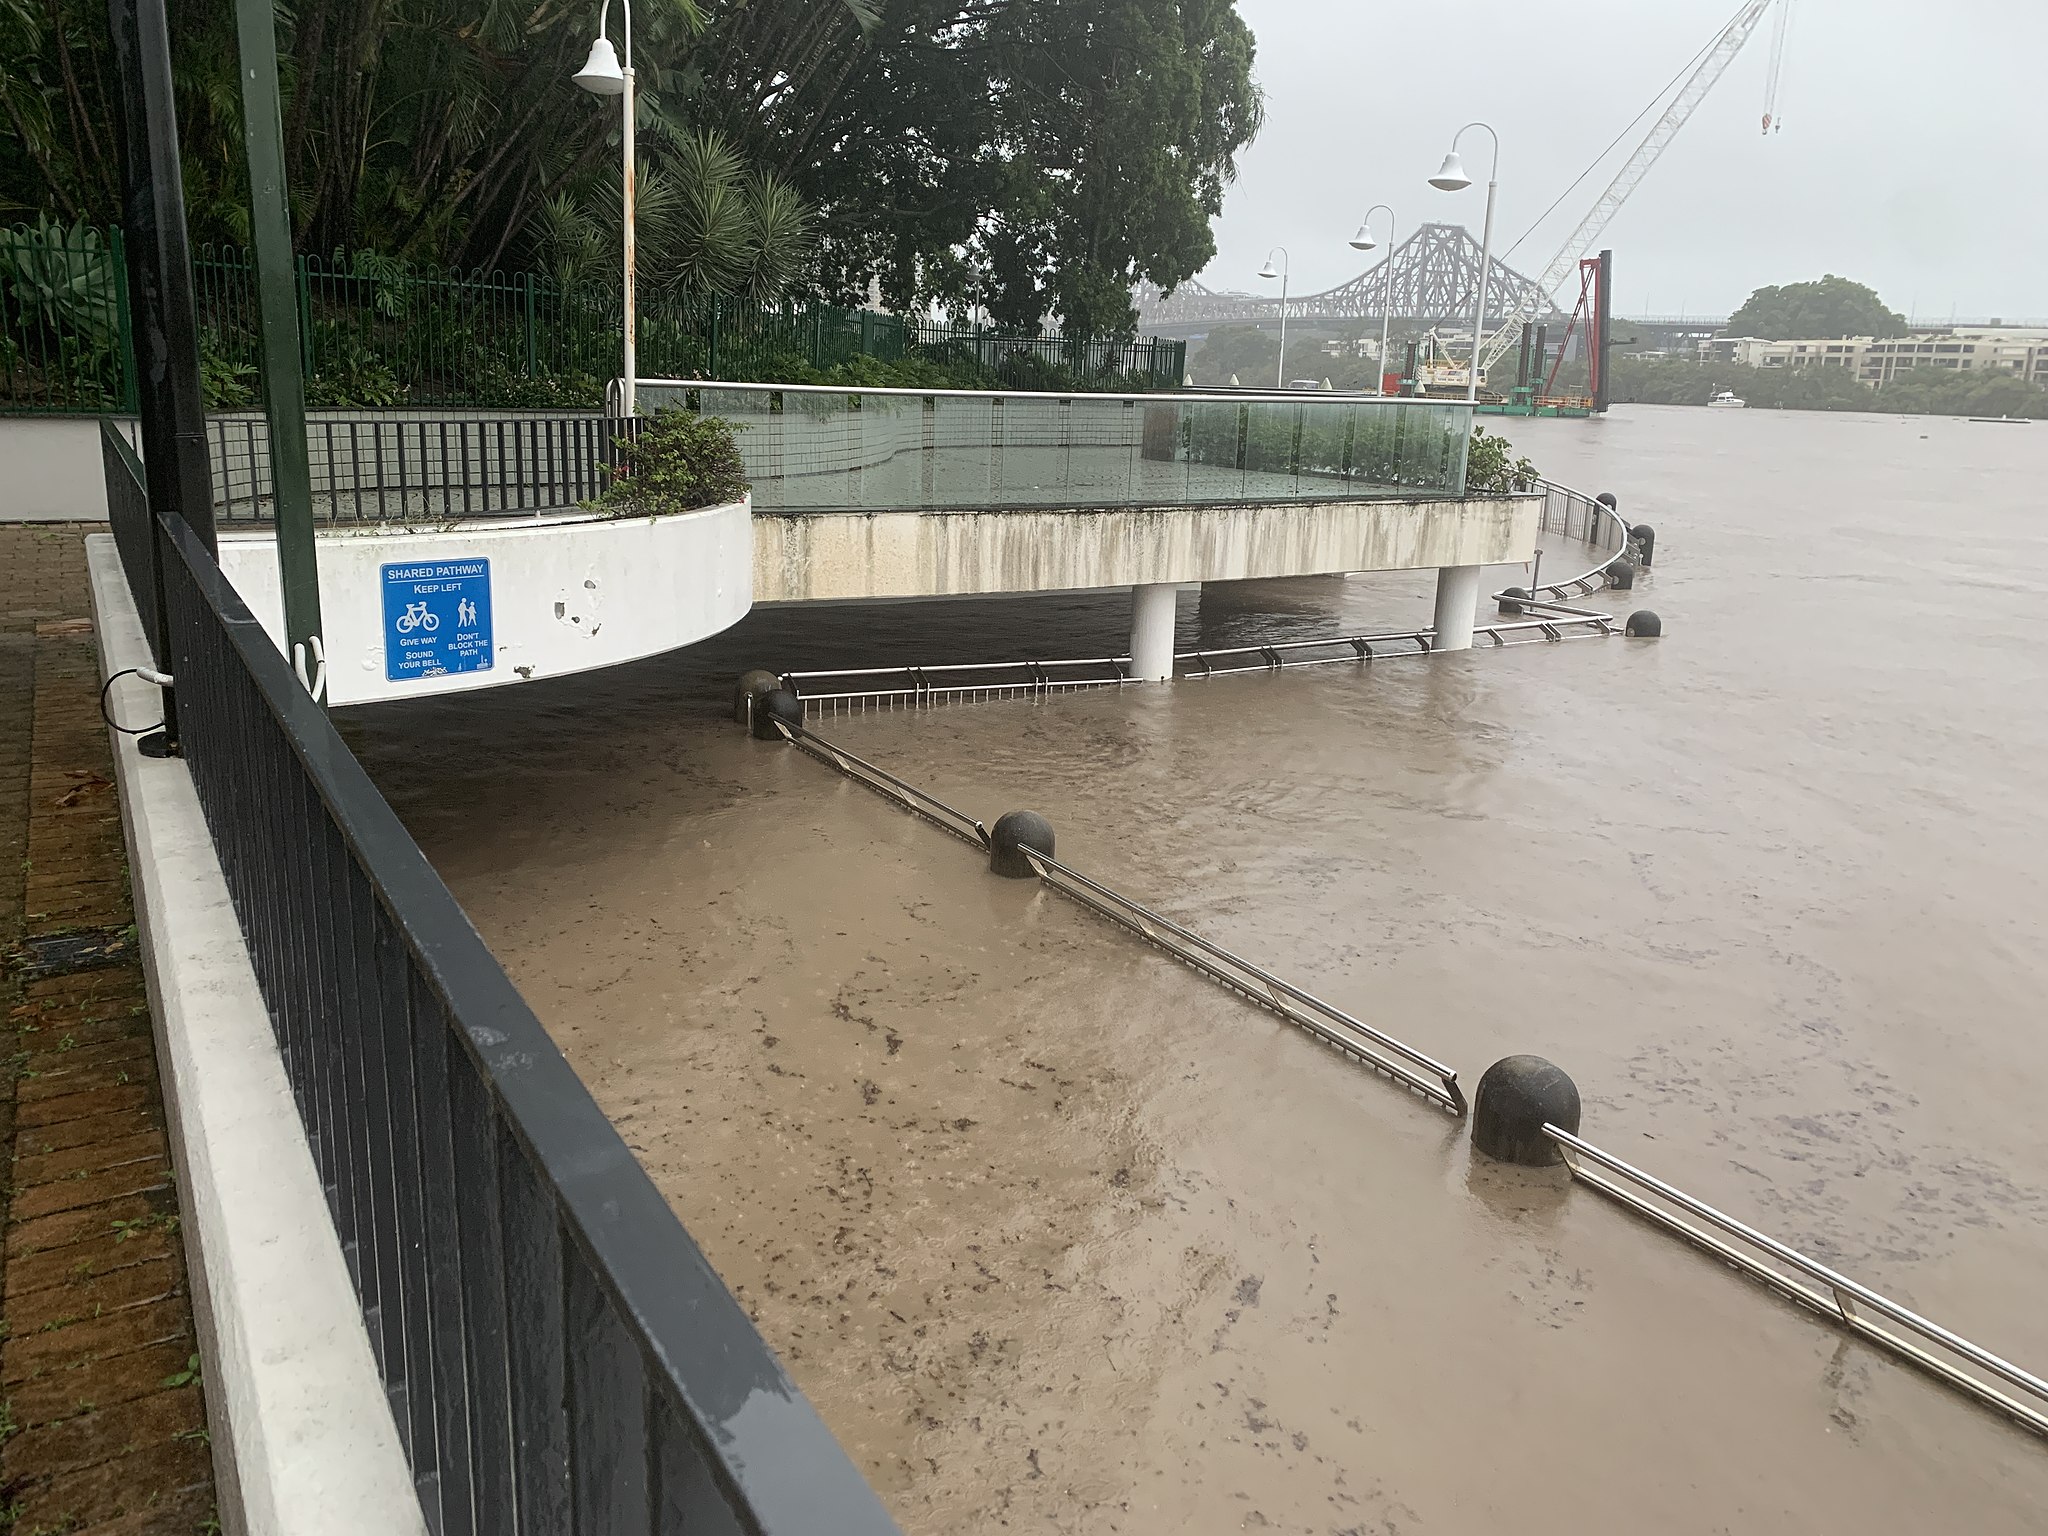 überschwemmte Straße nach Flut in Australien